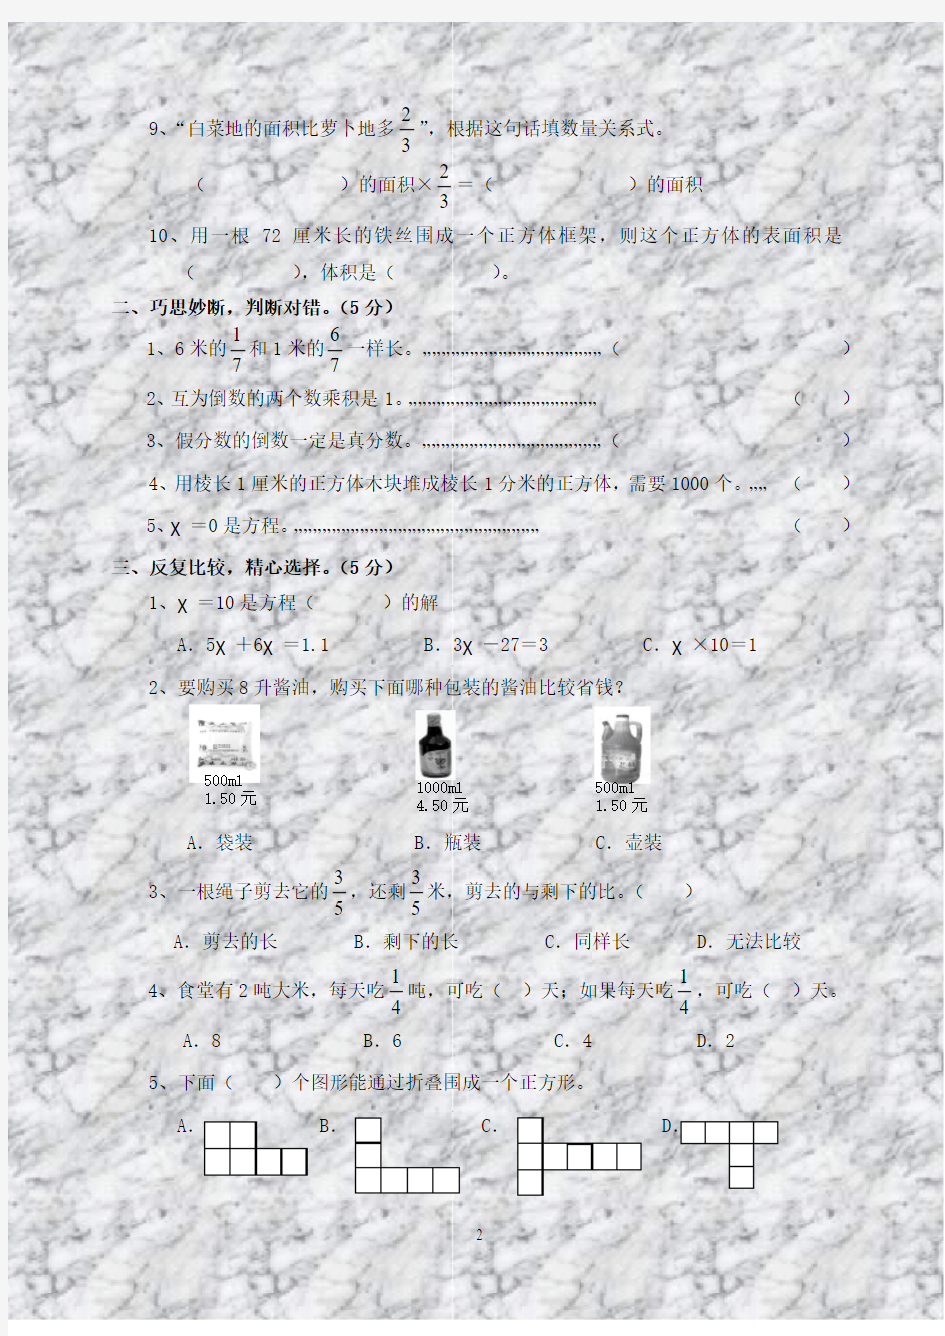 苏教版国标本小学六年级(上册)数学期中测试卷(A)